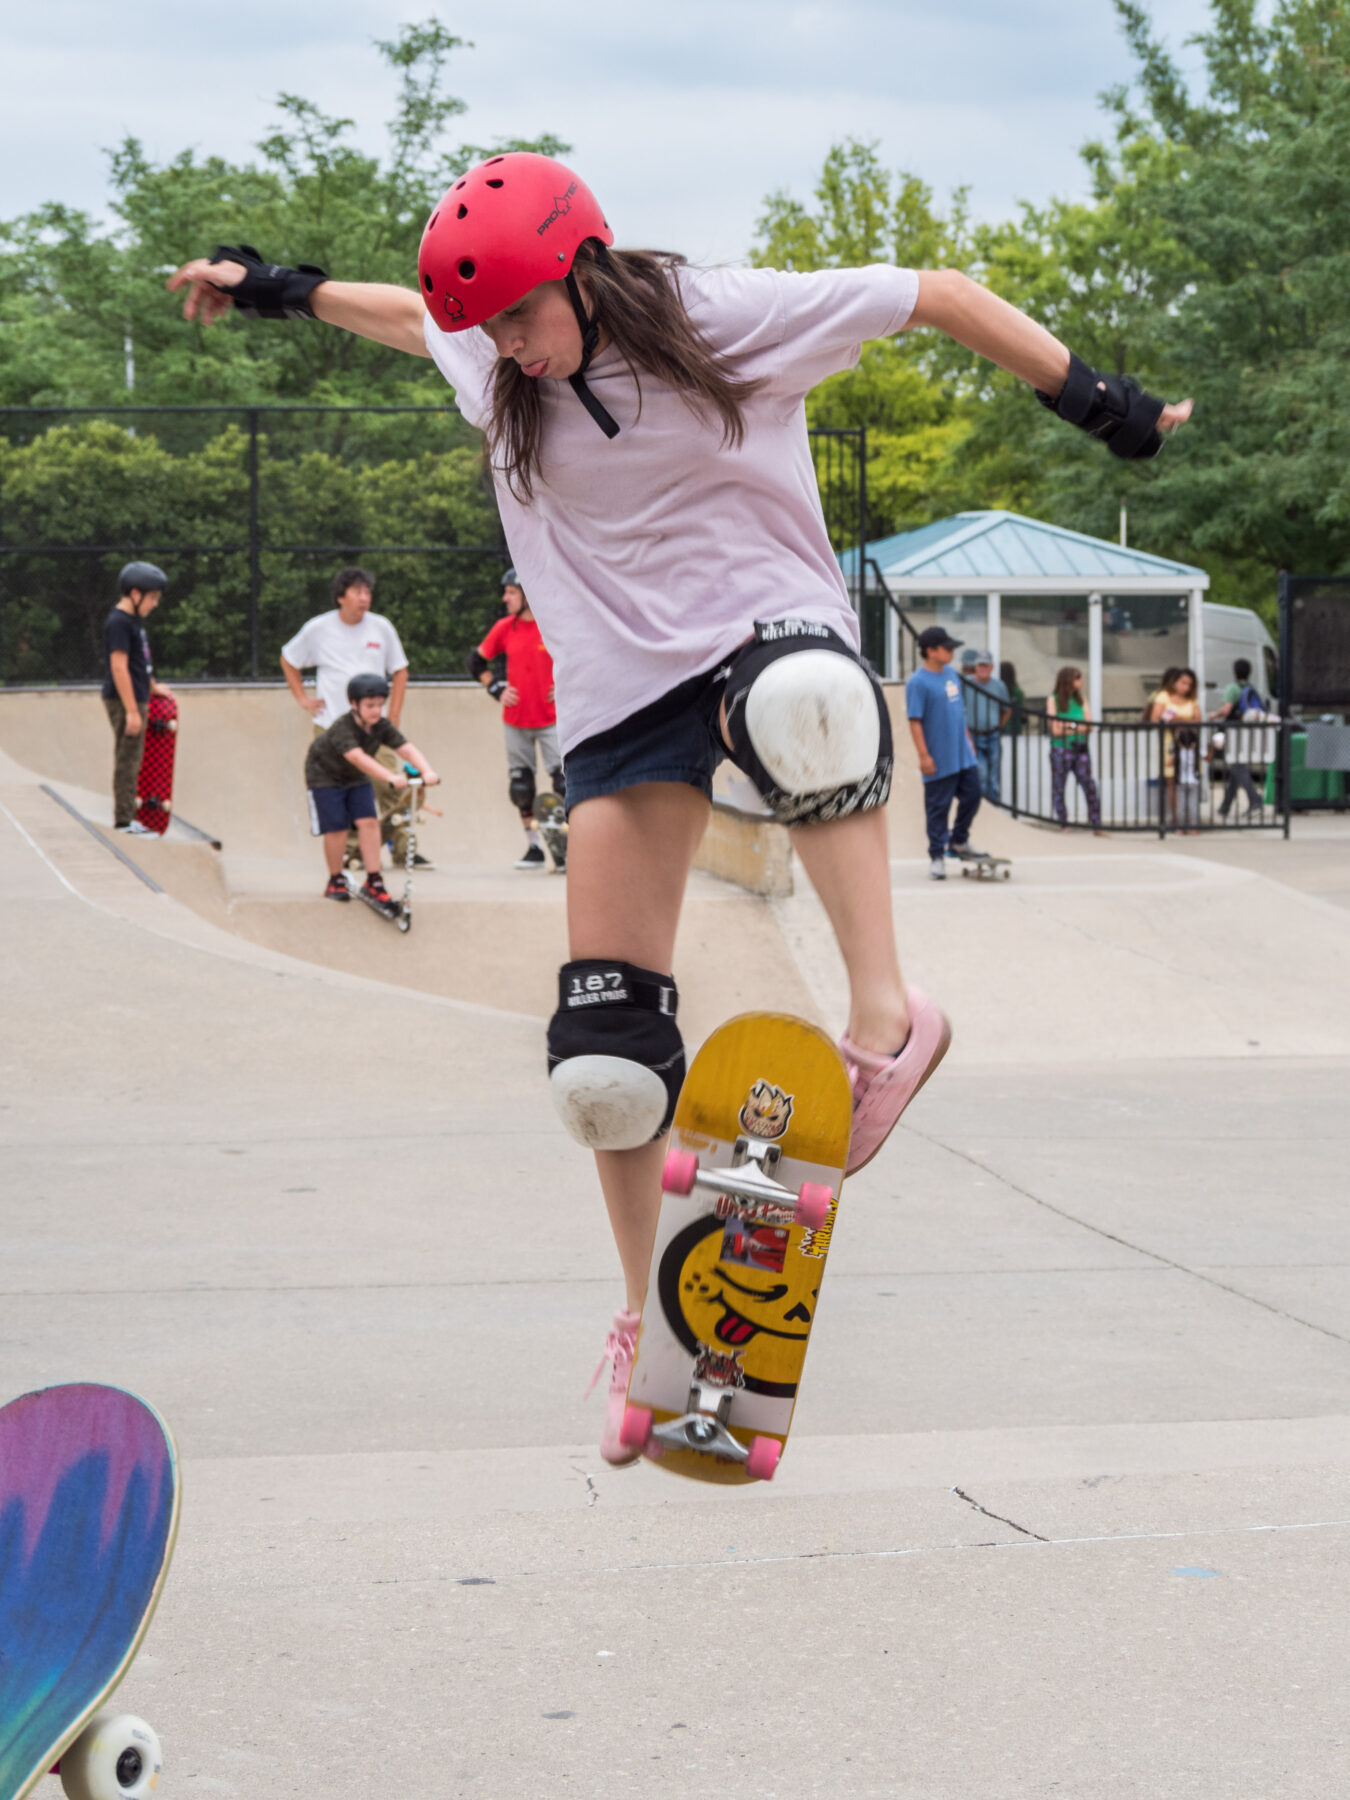 Skateboarder doing skateboard trick.